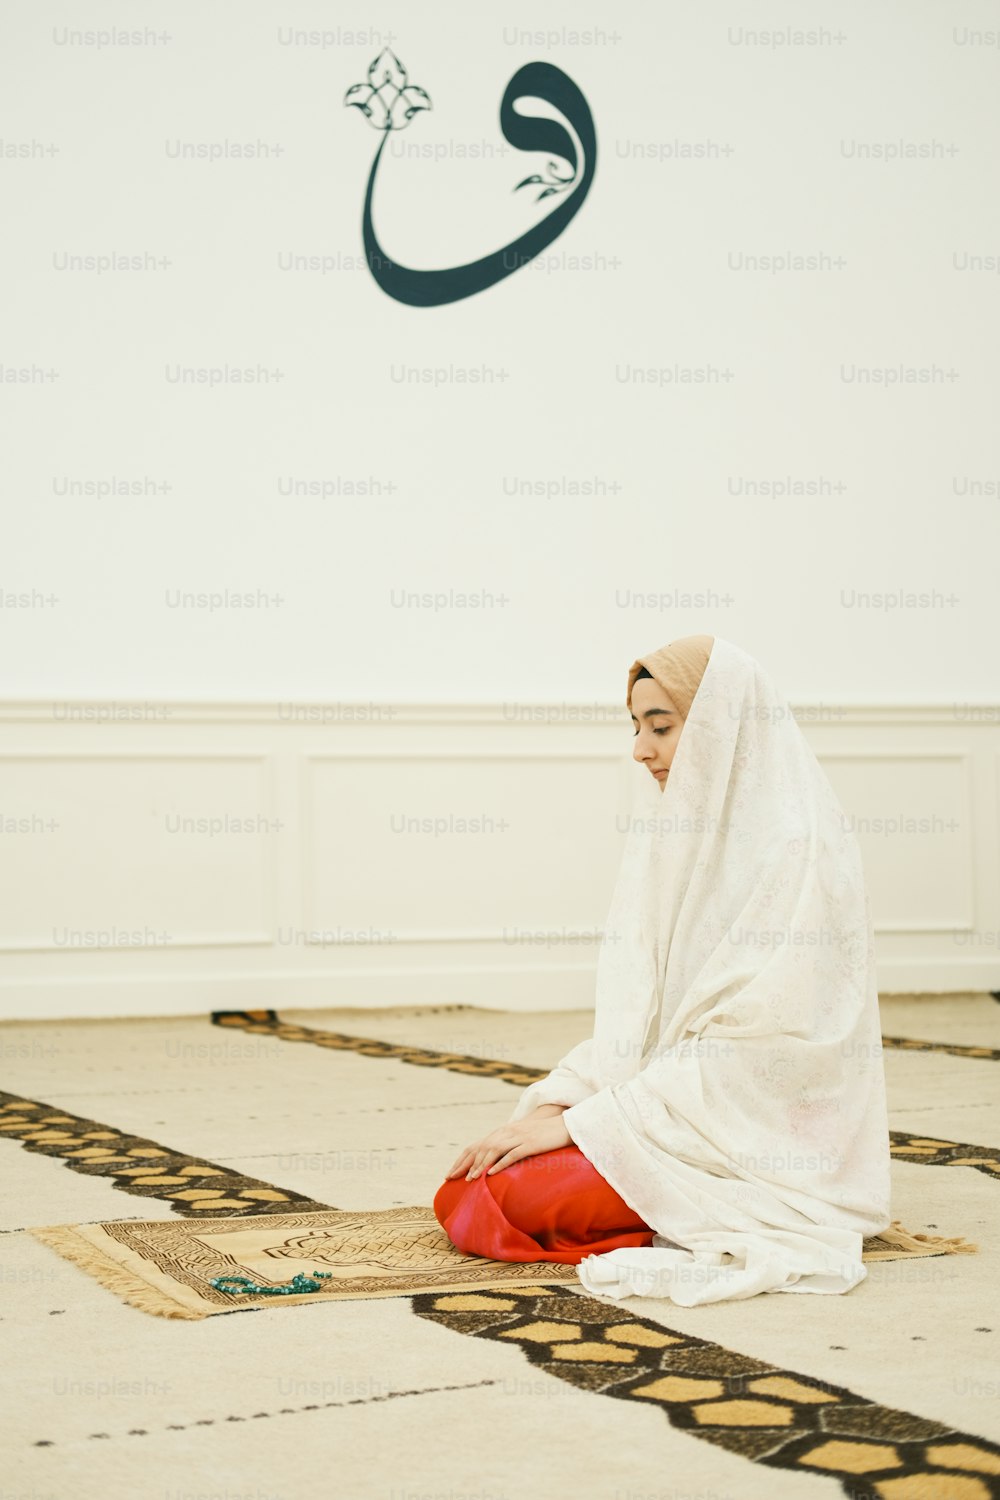 하얀 드레스를 입고 바닥에 앉아 있는 여자